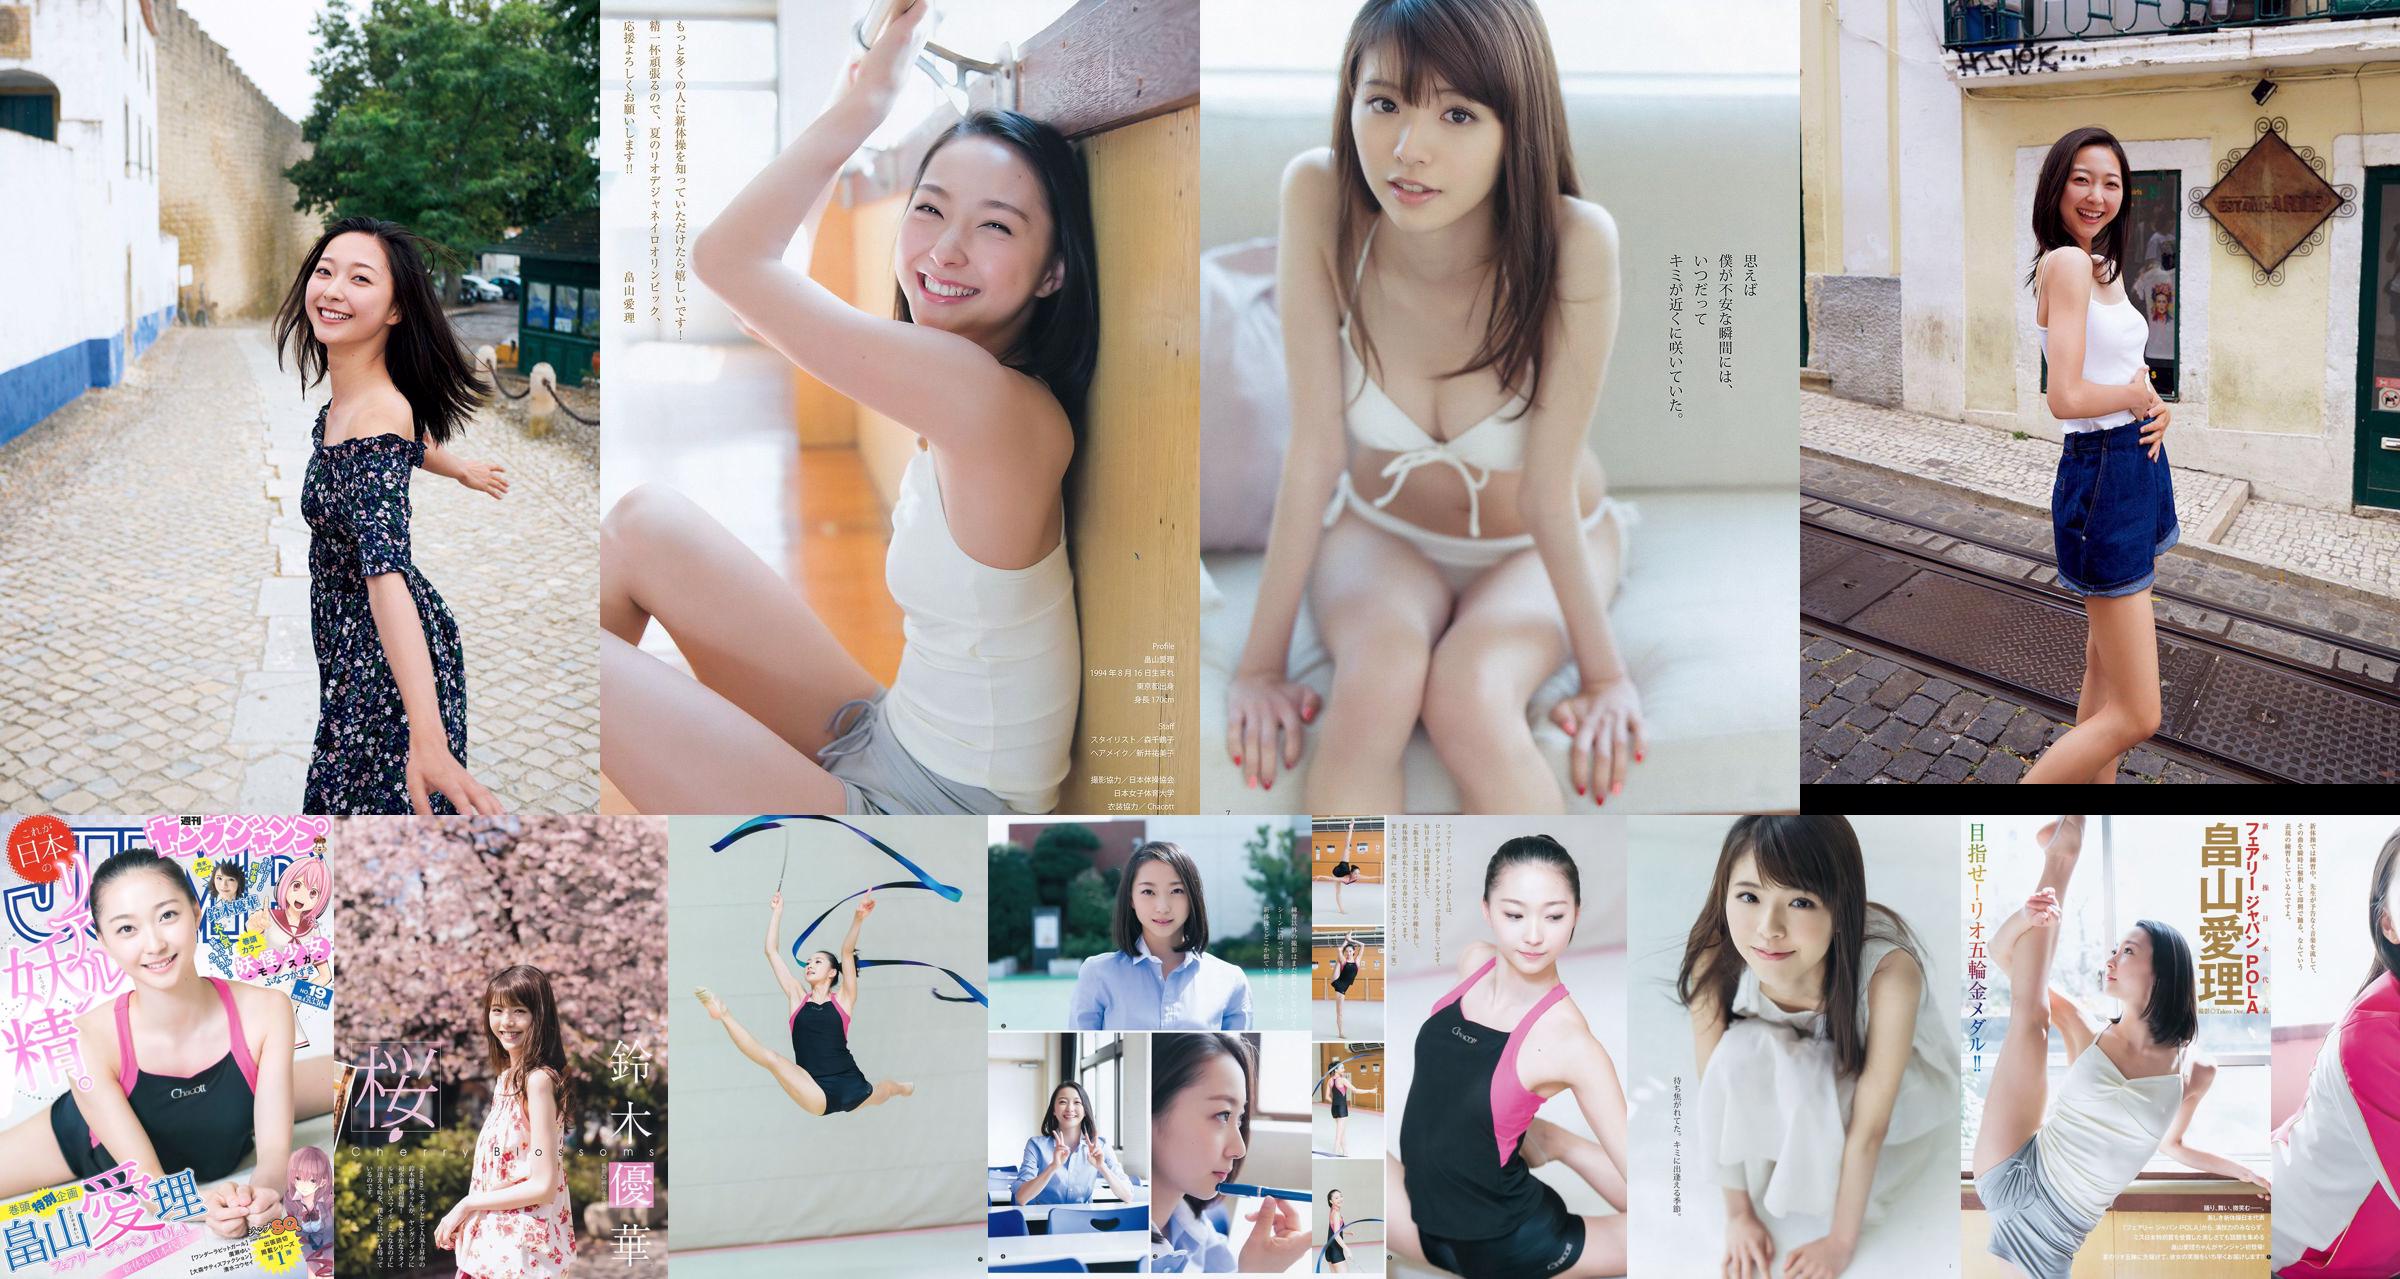 [ENTAME] Mai Shiraishi Nanase Nishino Rena Shimada Yui Takano Ausgabe März 2014 Foto No.e8d3a0 Seite 1